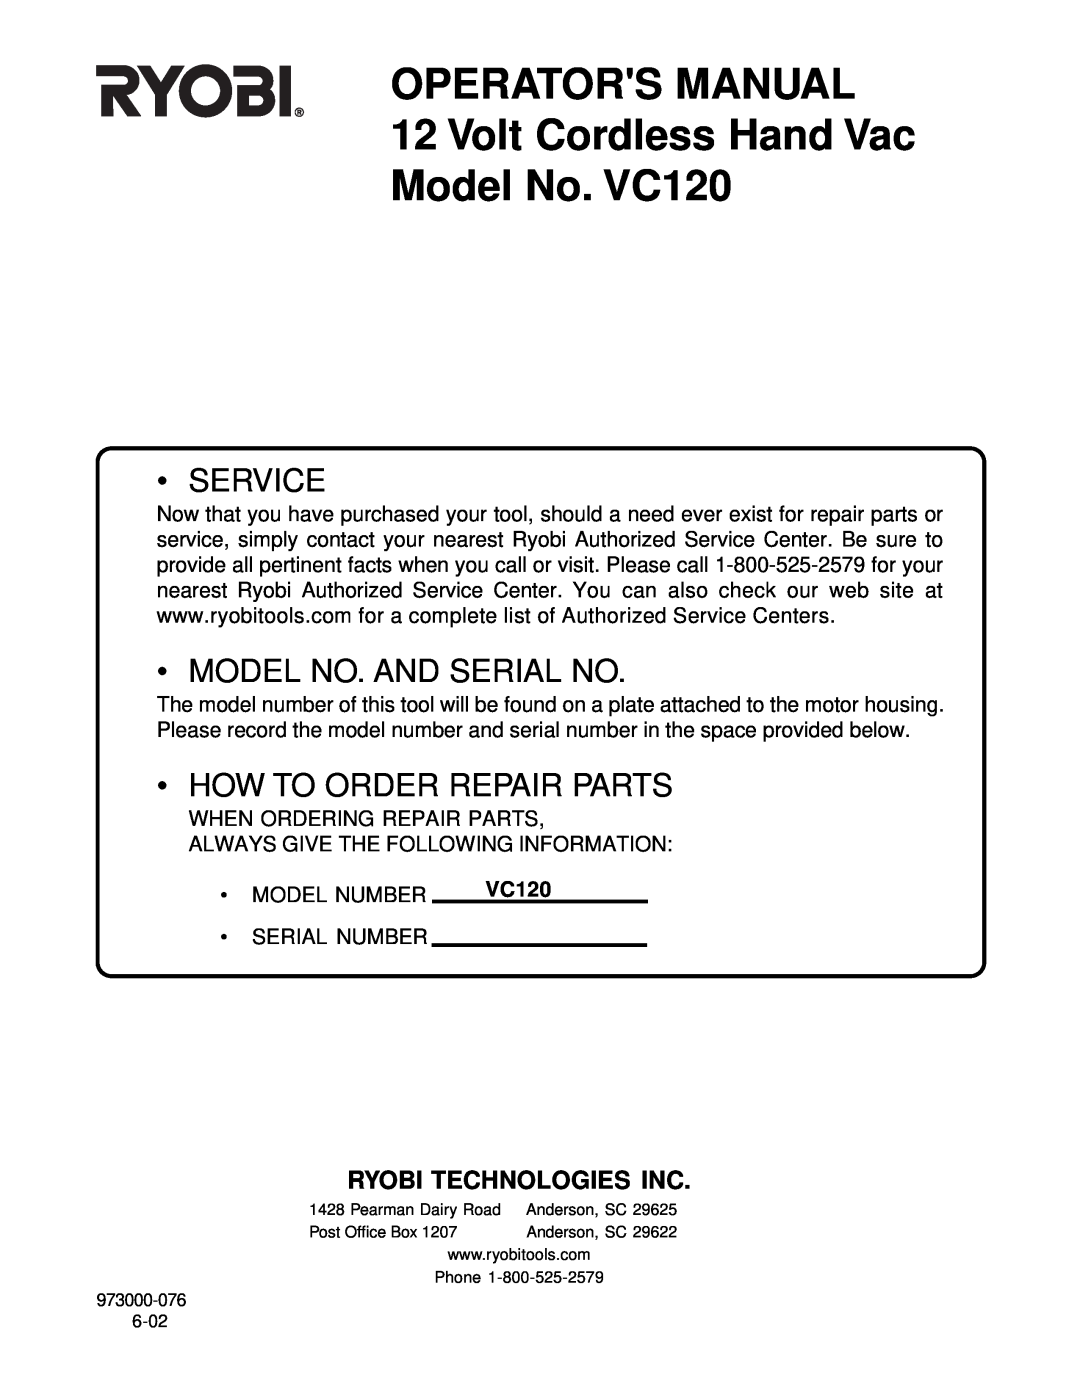 Ryobi manual OPERATORS MANUAL 12 Volt Cordless Hand Vac, Model No. VC120, Service, Model No. And Serial No 